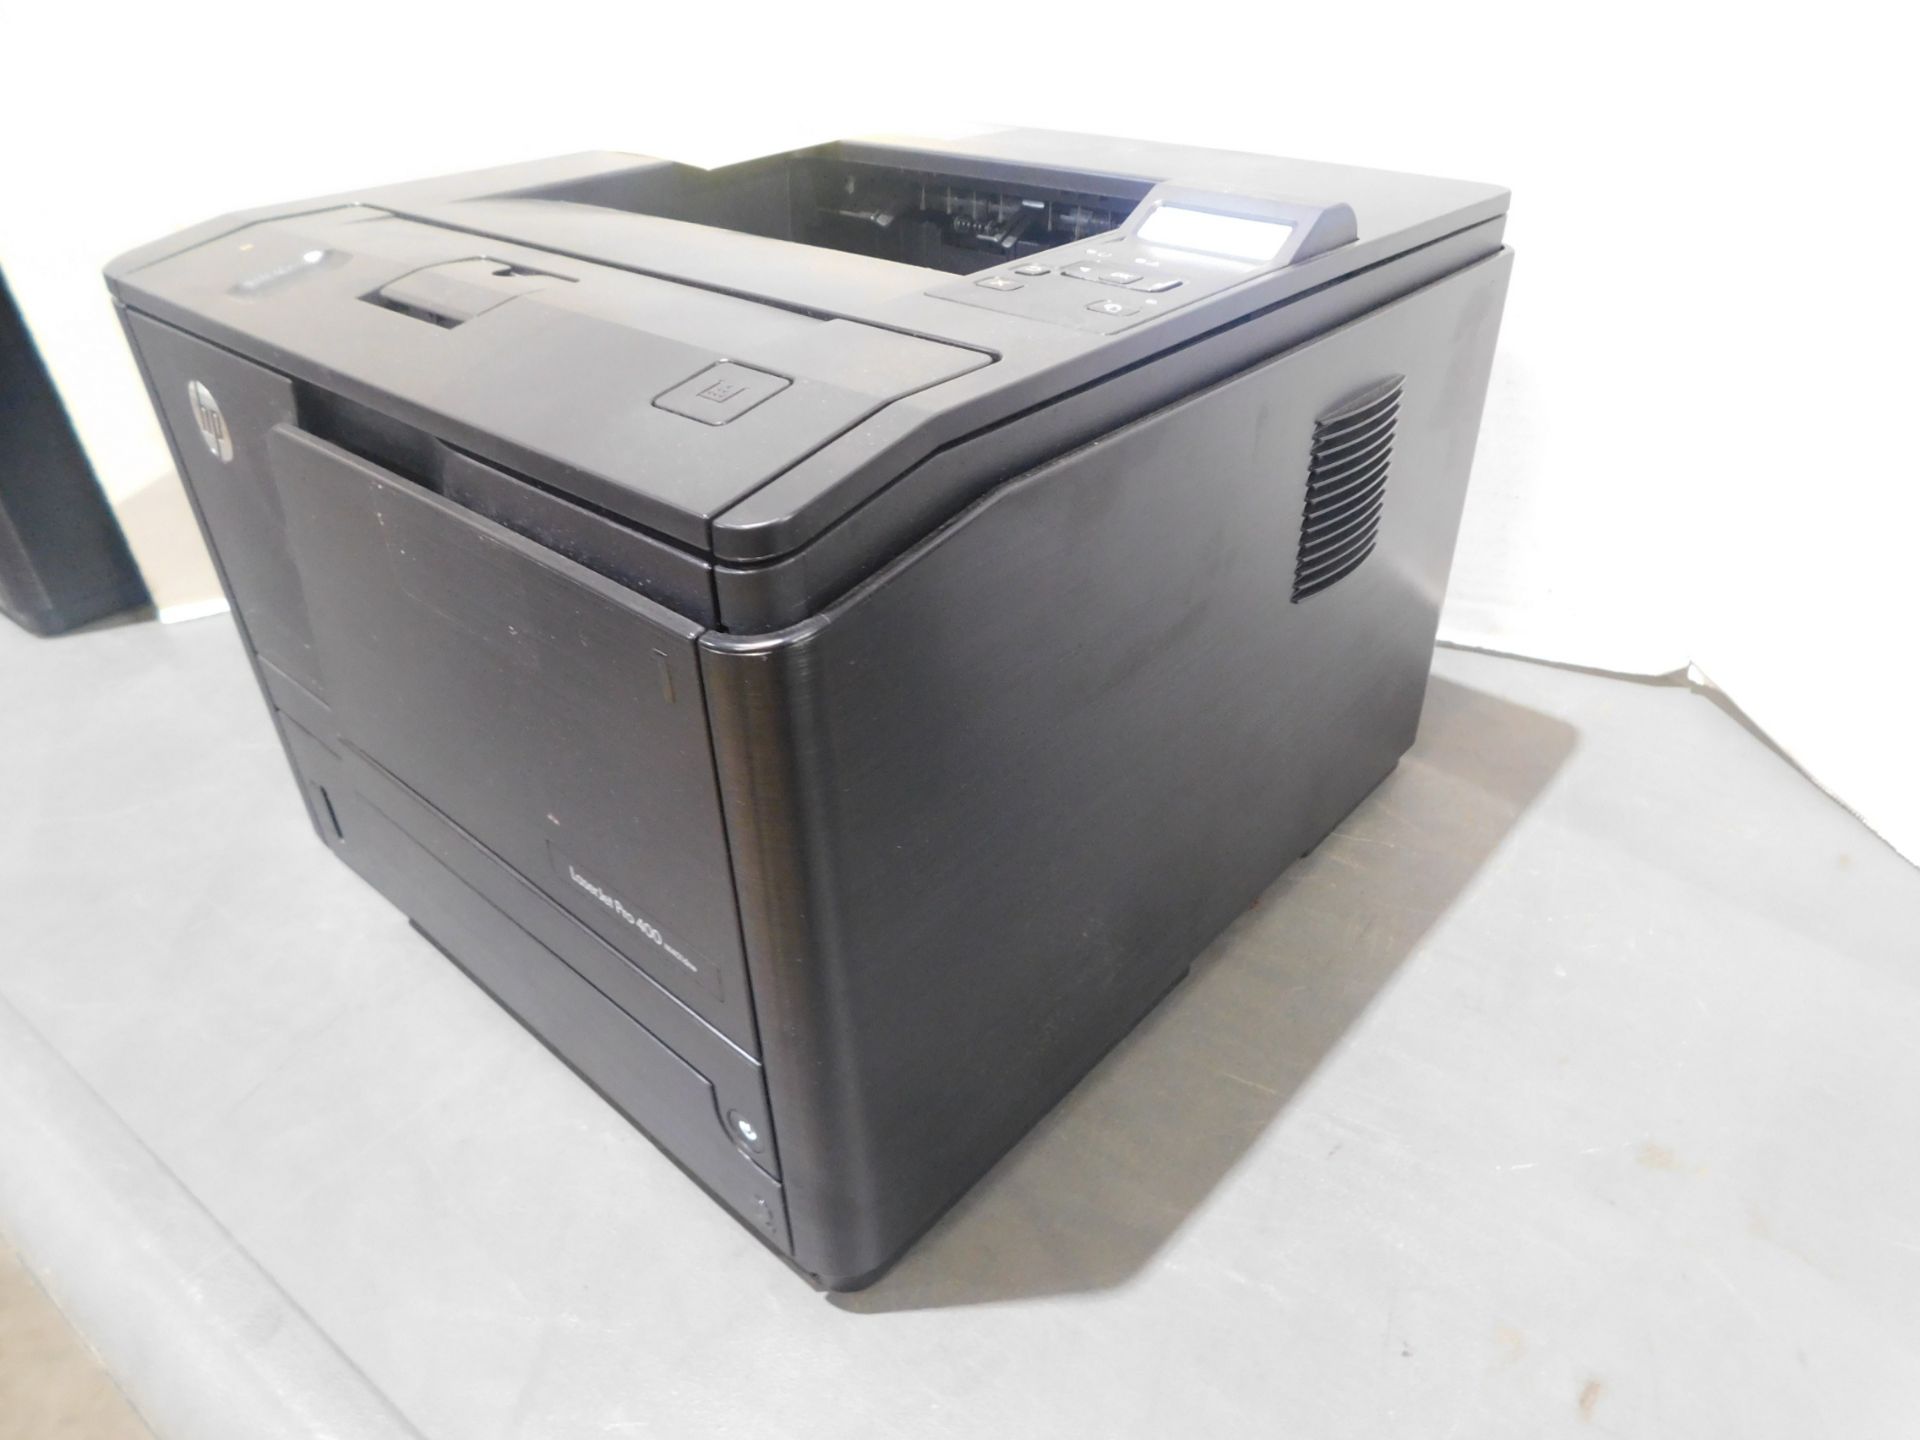 HP Laser Jet Pro 400/M401dne Printer, SN VNG3H02669 - Image 3 of 5